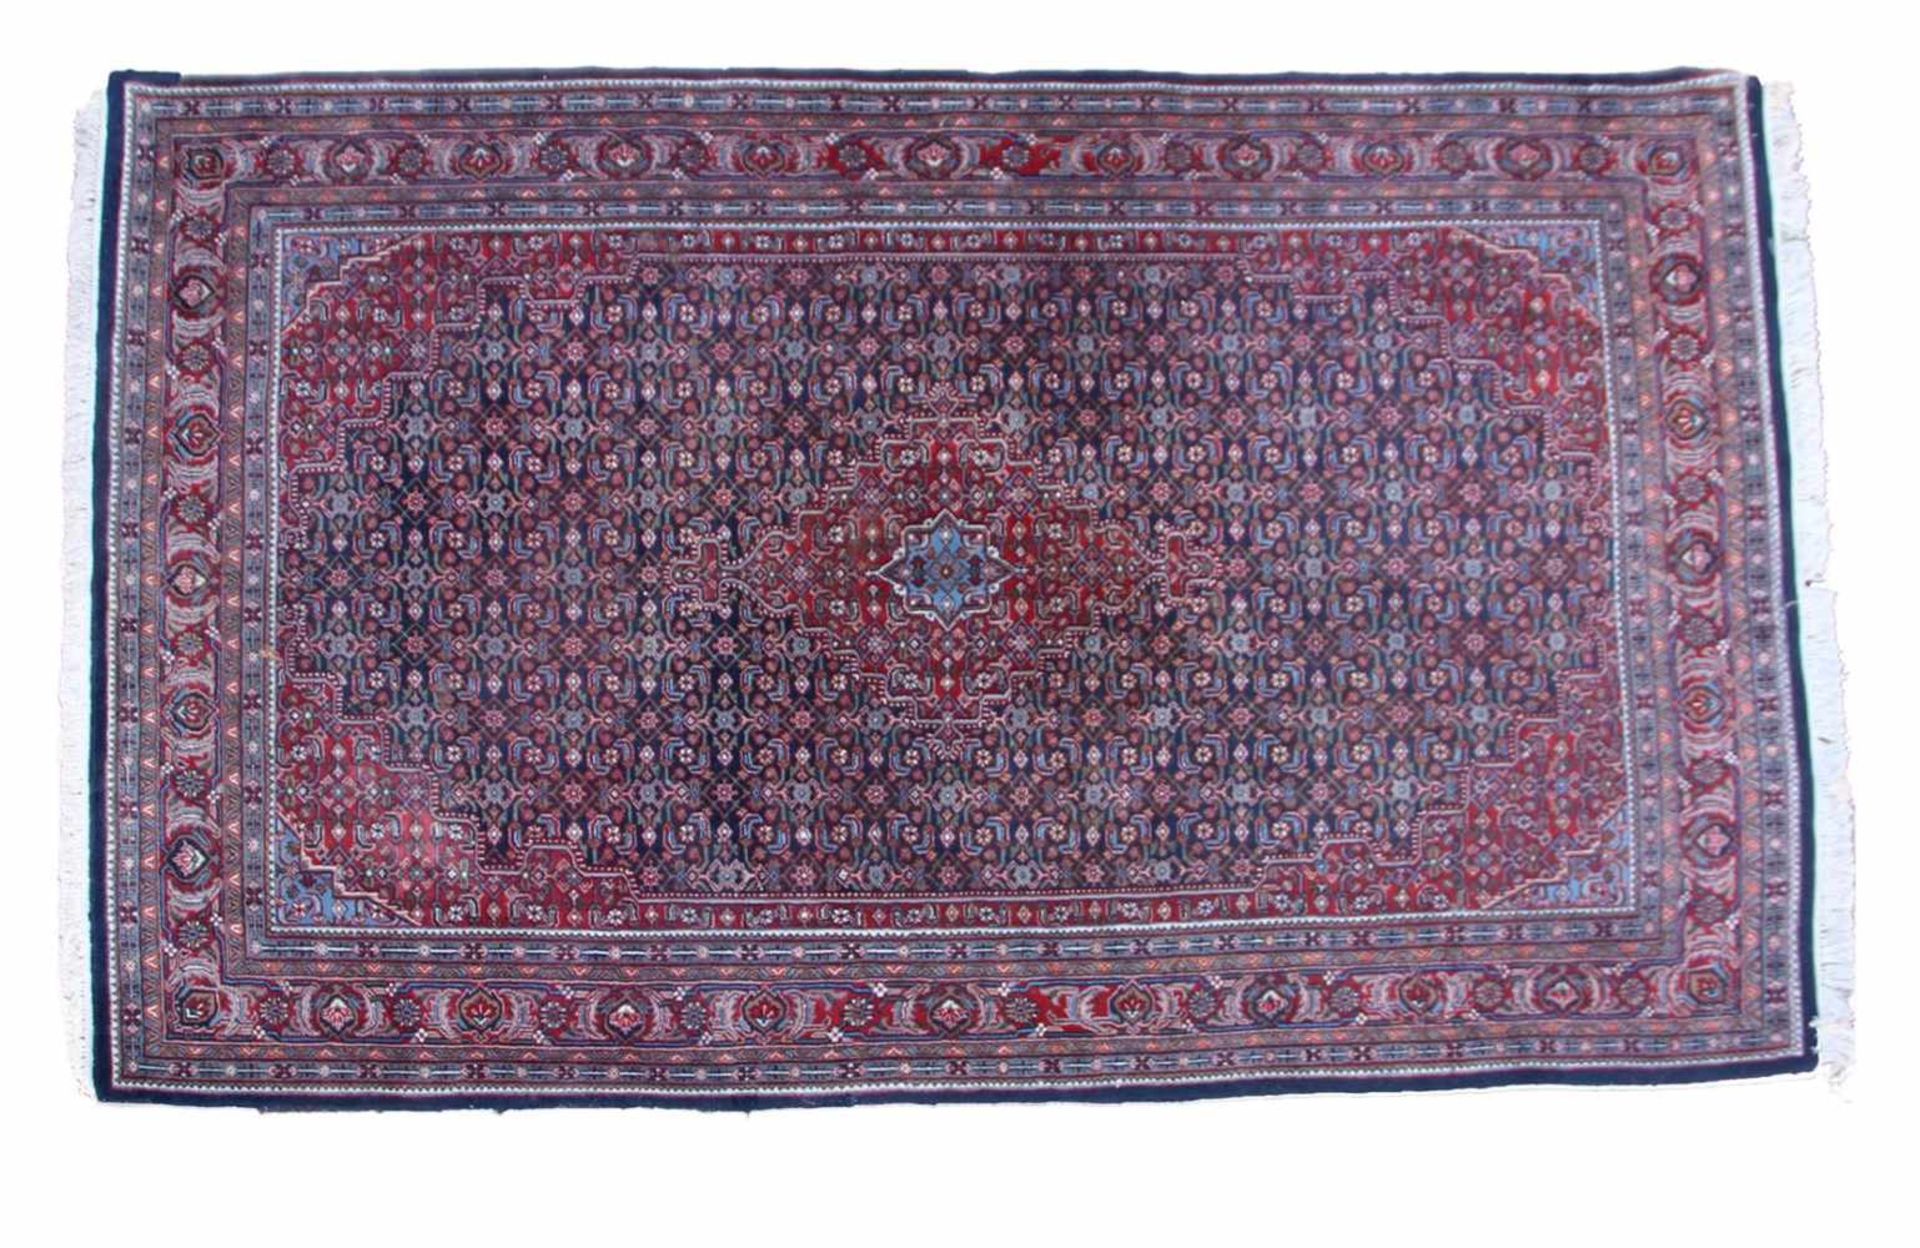 Hand-knotted wool Bidjar carpet, 300x192 cm